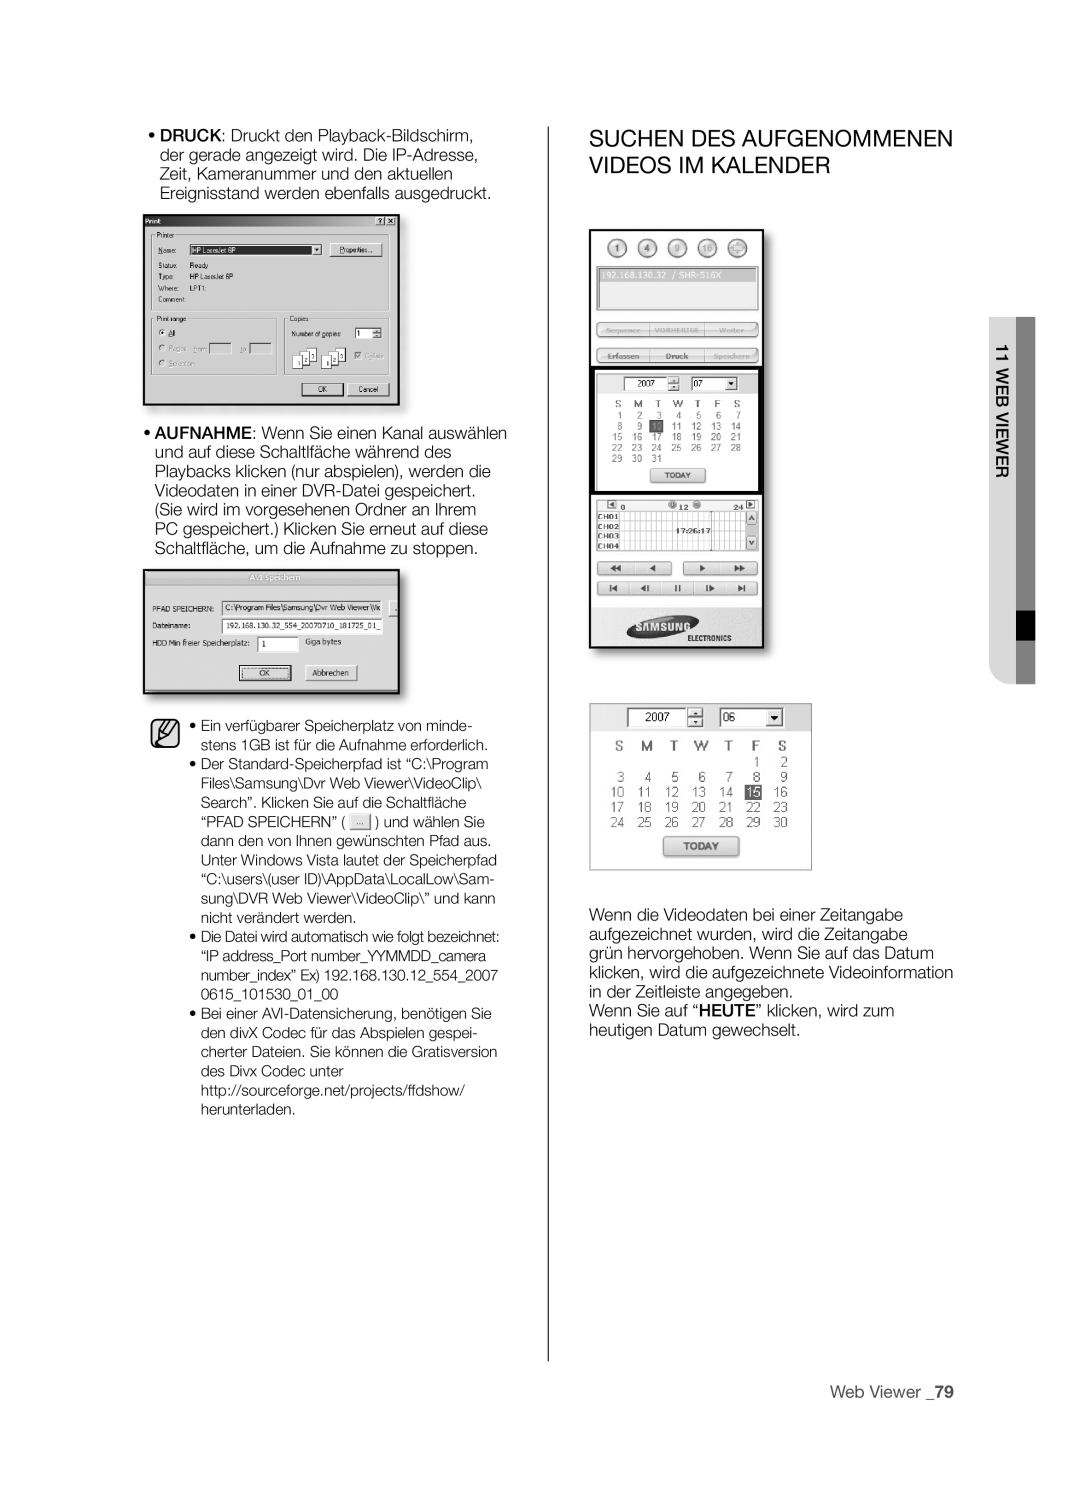 Samsung SHR-5082P/XEG, SHR-5160P, SHR-5162P/XEG, SHR-5080P manual Suchen Des Aufgenommenen Videos Im Kalender, Web Viewer 